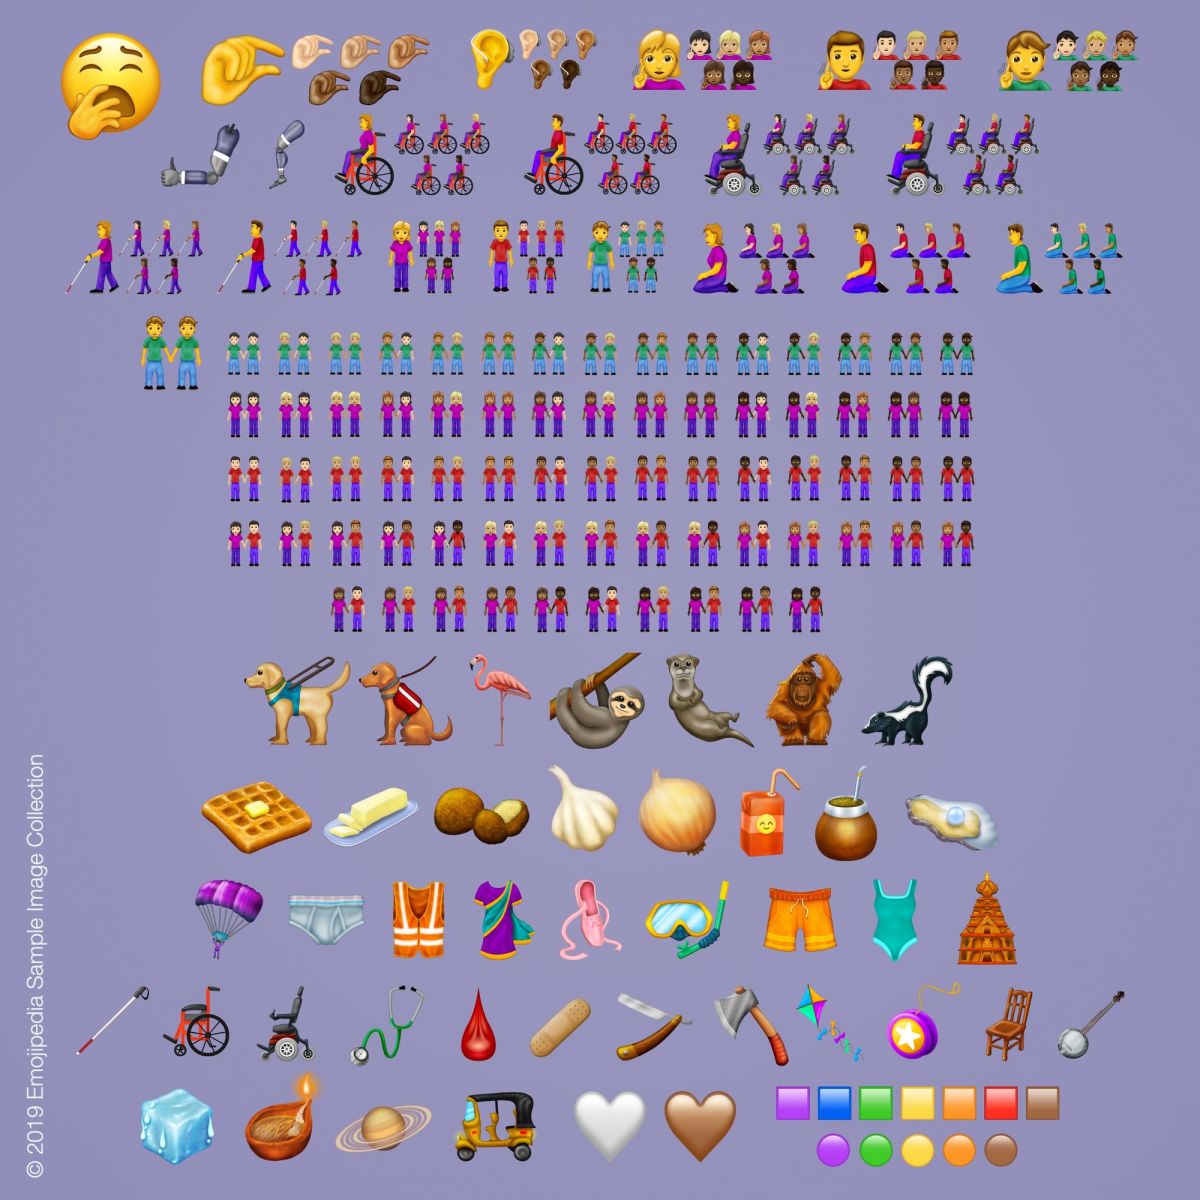 emoji -tatoveringer, tatoveringsideer, emoji -tatoveringsideer, nye emojis, emoji -opdatering 2019, klemning af emoji, aubergine -emoji, ny emoji -liste, ny emoji -liste 2019, Apple, Apple emojis, android emojis, The Unicode Consortium, inked mag